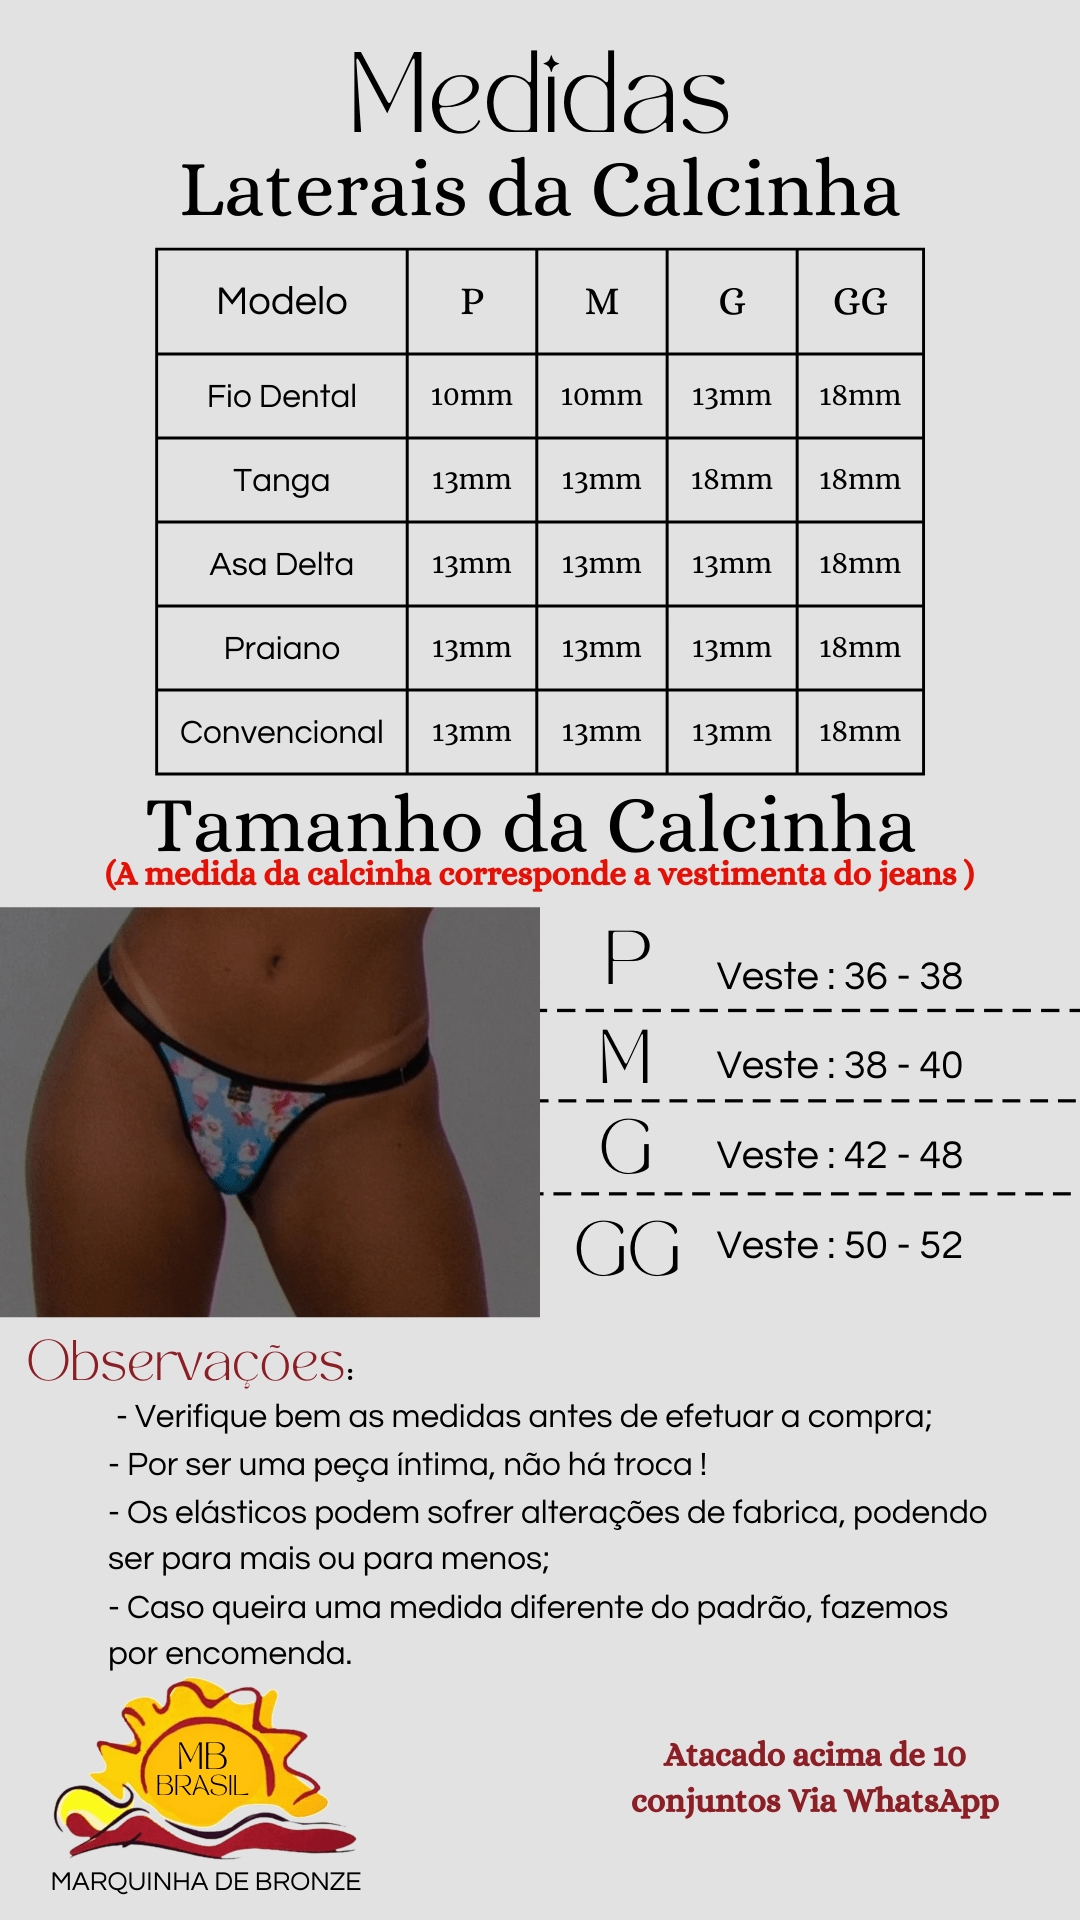 tabela-de-medidas-calcinha-para-bronzear-MB-Brasil